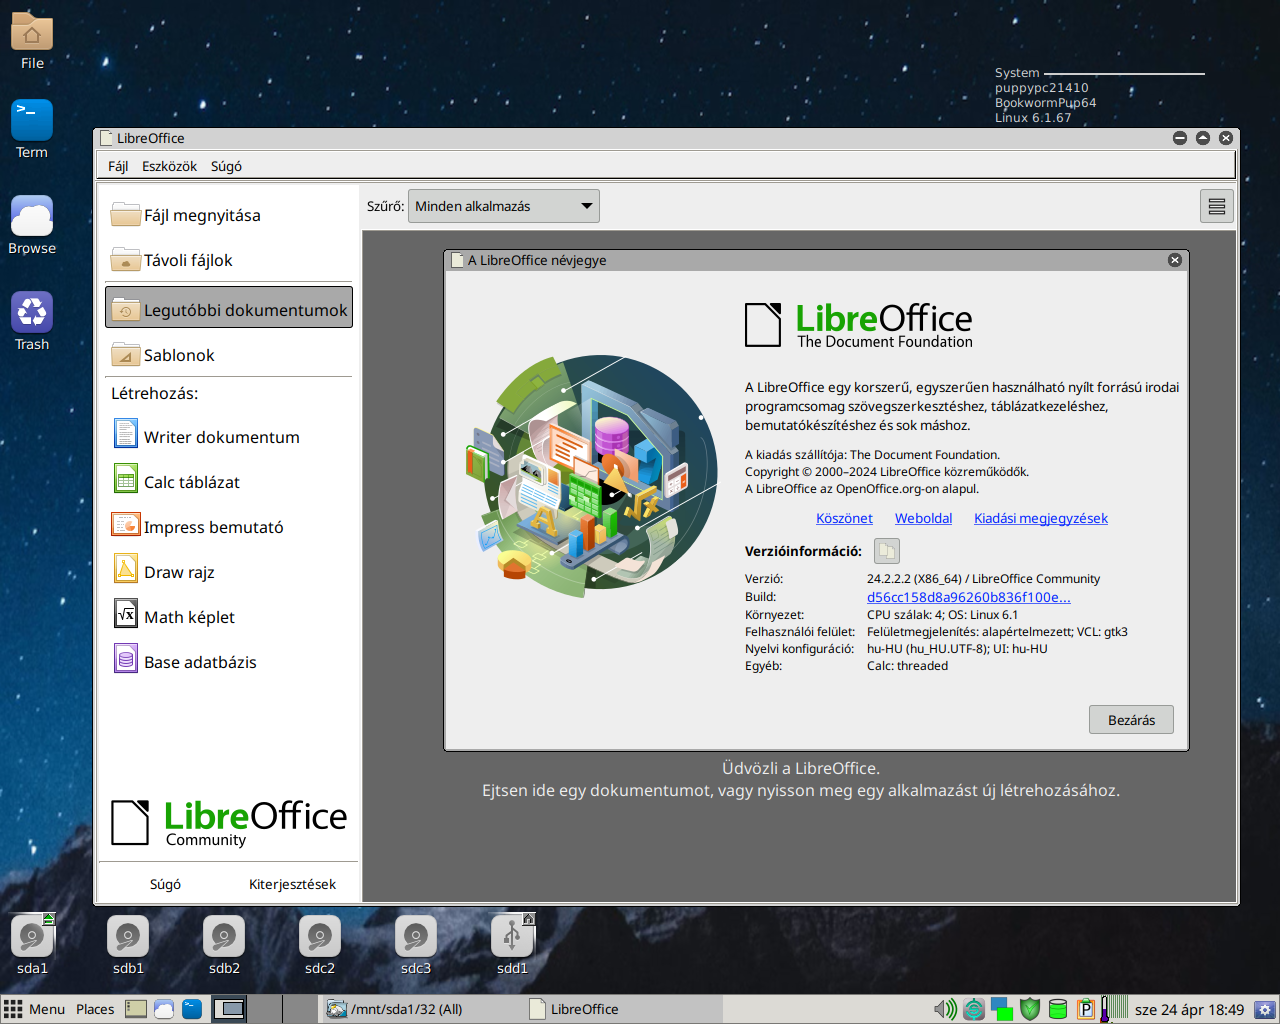 libreOffice-24.2.2.2.png